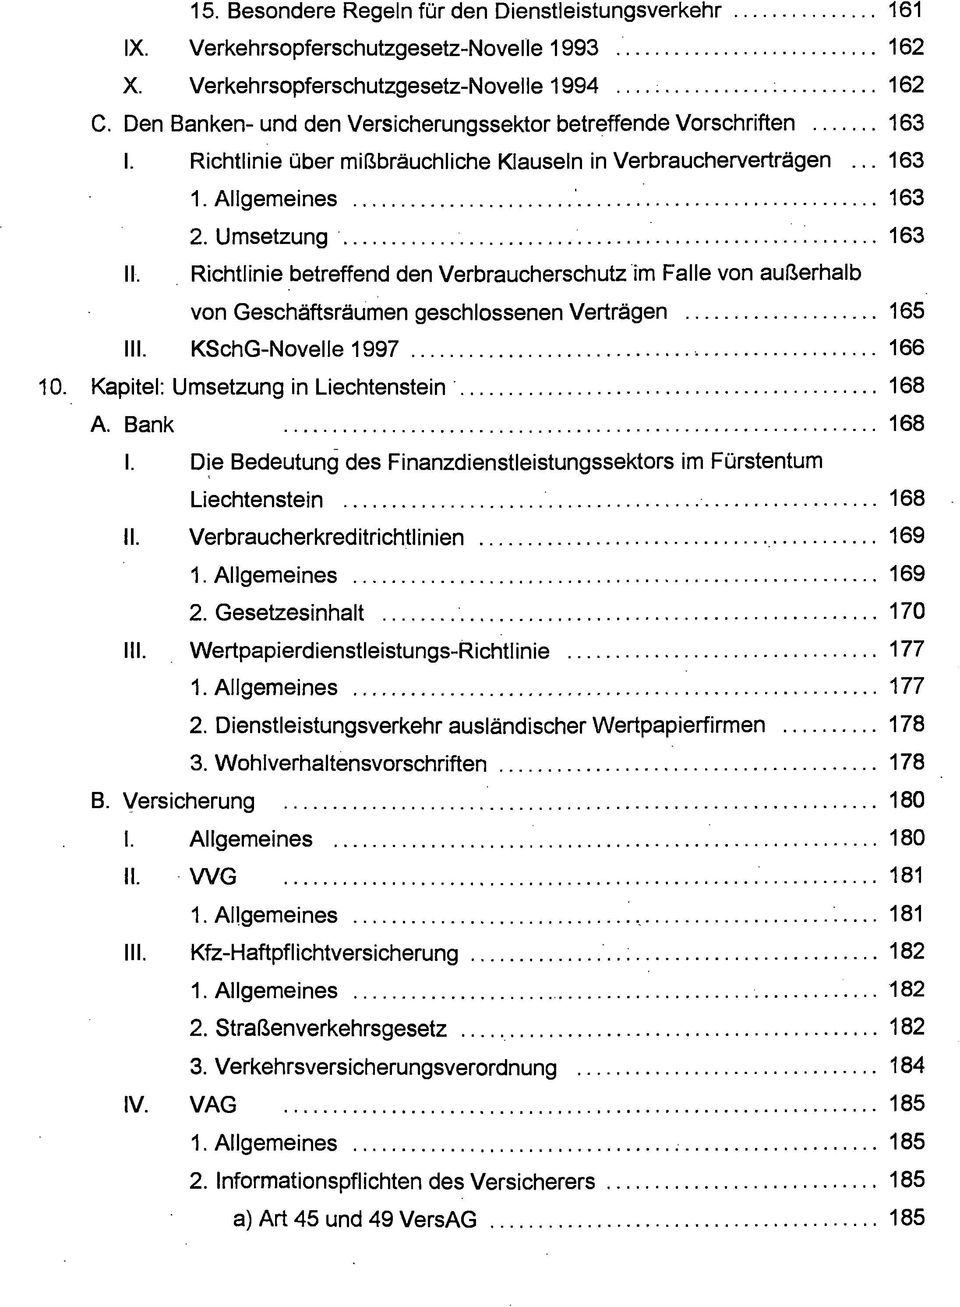 Richtlinie betreffend den Verbraucherschutz im Falle von außerhalb von Geschäftsräumen geschlossenen Verträgen 165 III. KSchG-Novelle 1997 166 Kapitel: Umsetzung in Liechtenstein 168 A. Bank 168 I.